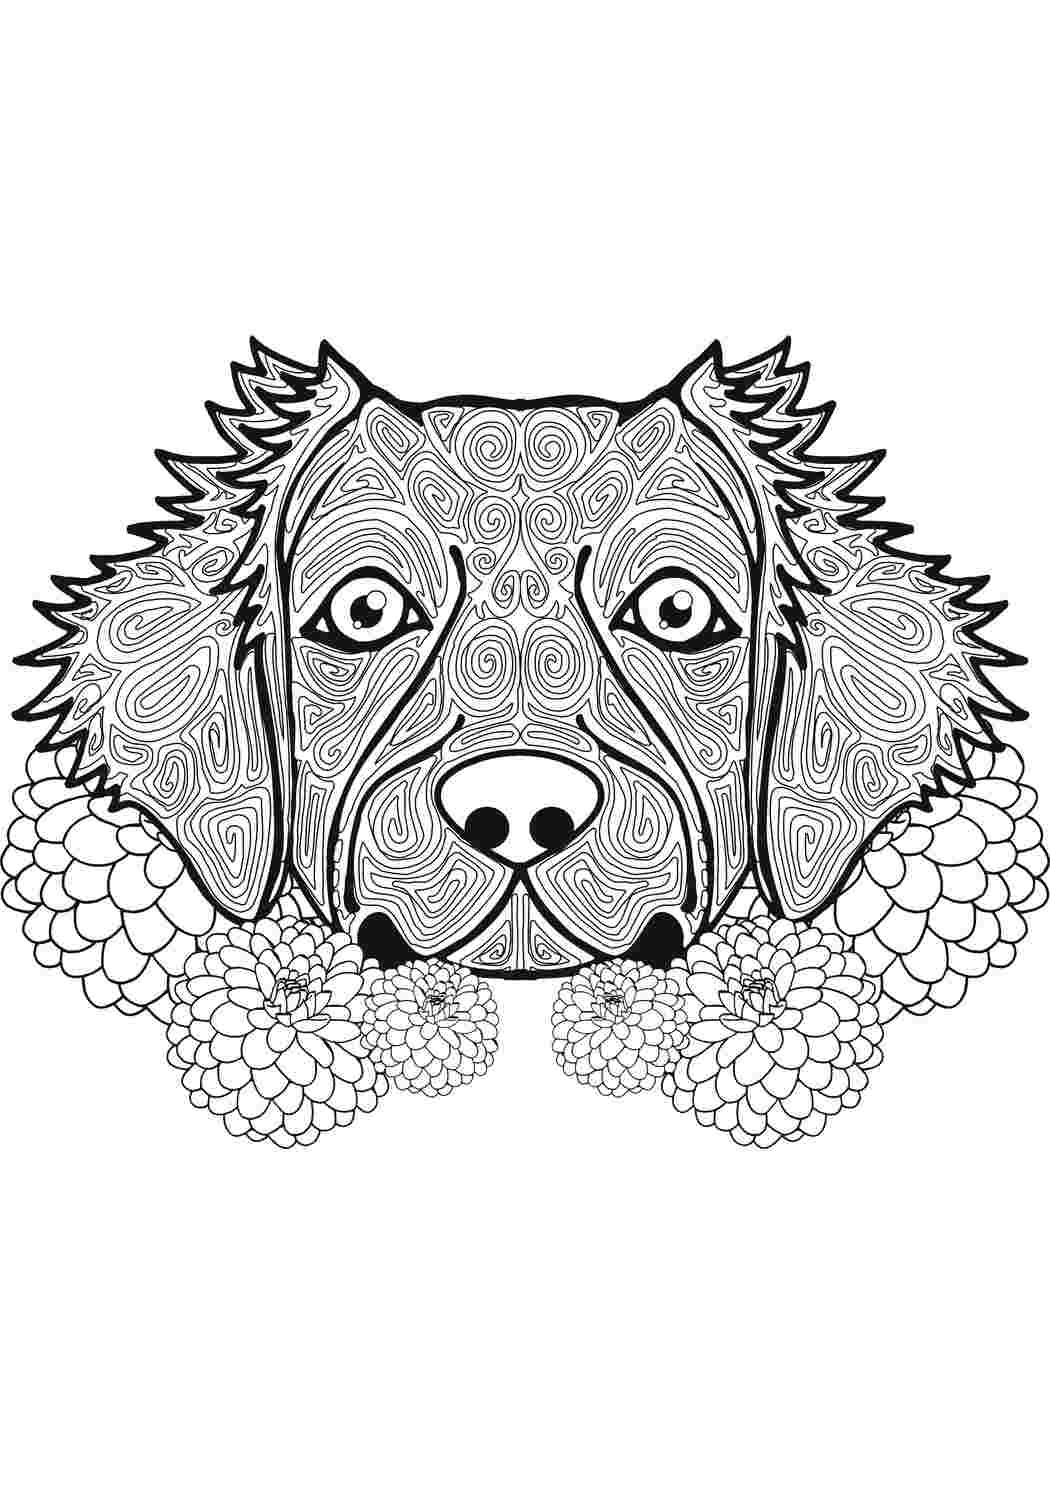 Раскраски Собачка в узорах раскраски антистресс собака, узоры, цветы